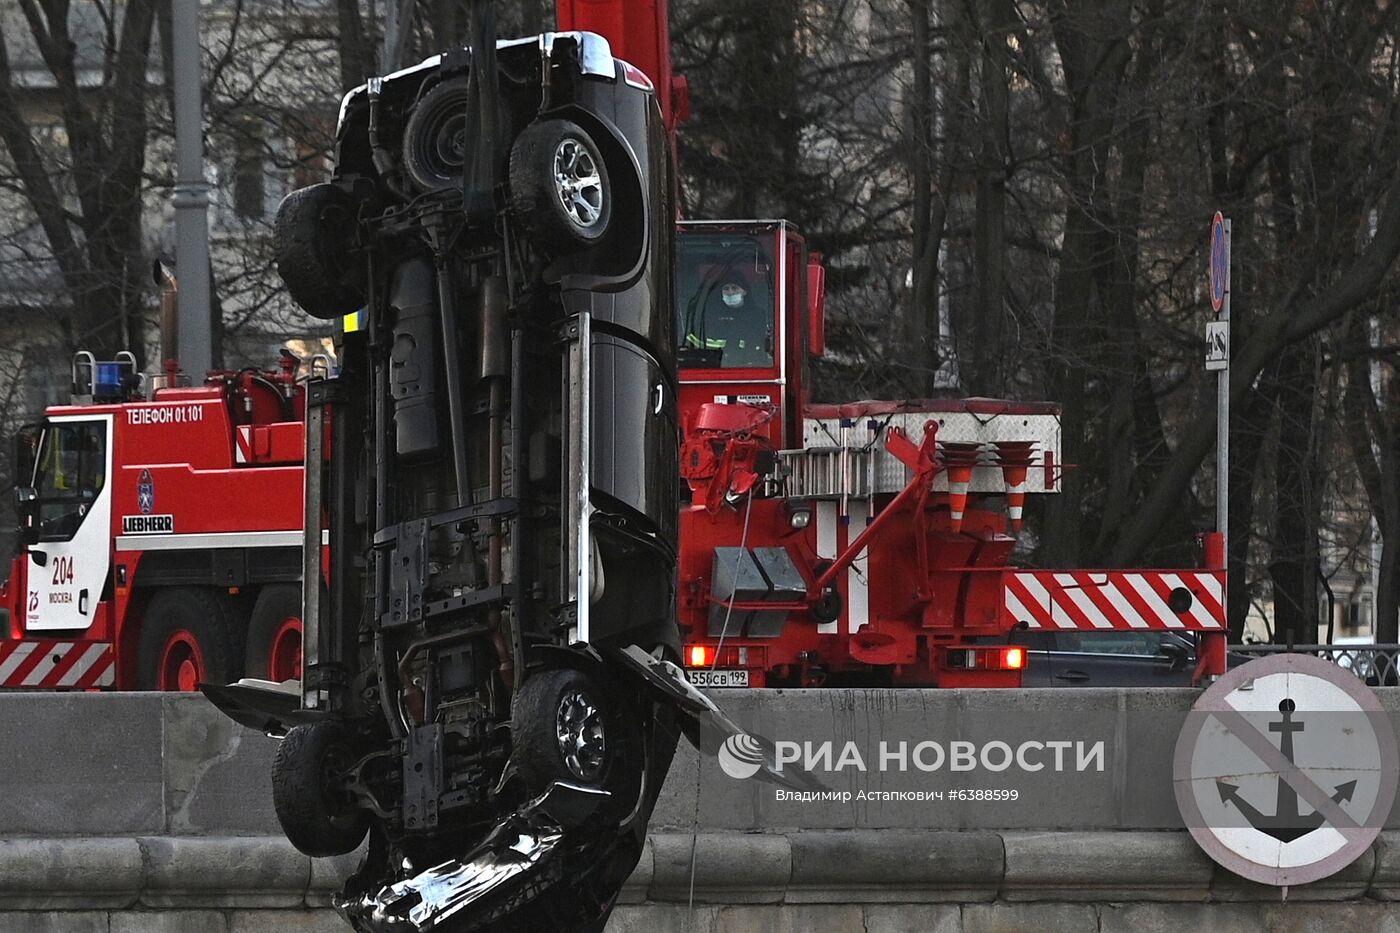 Машина упала в Москва-реку на Пречистенской набережной